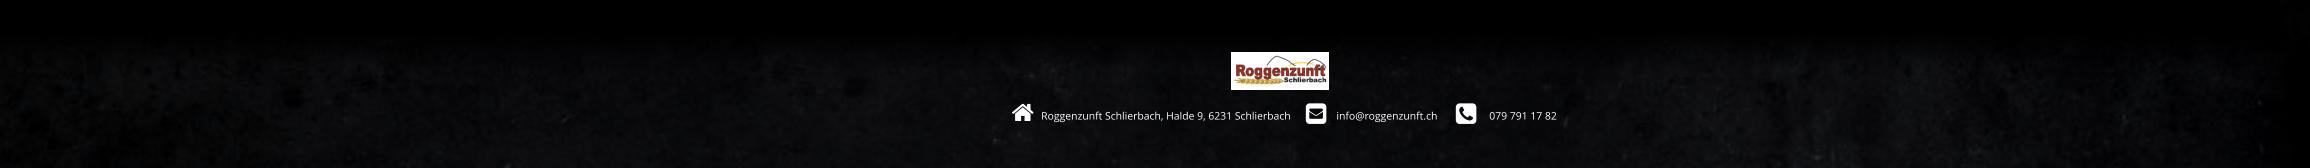 Roggenzunft Schlierbach, Halde 9, 6231 Schlierbach         info@roggenzunft.ch            079 791 17 82                                                                                                                            